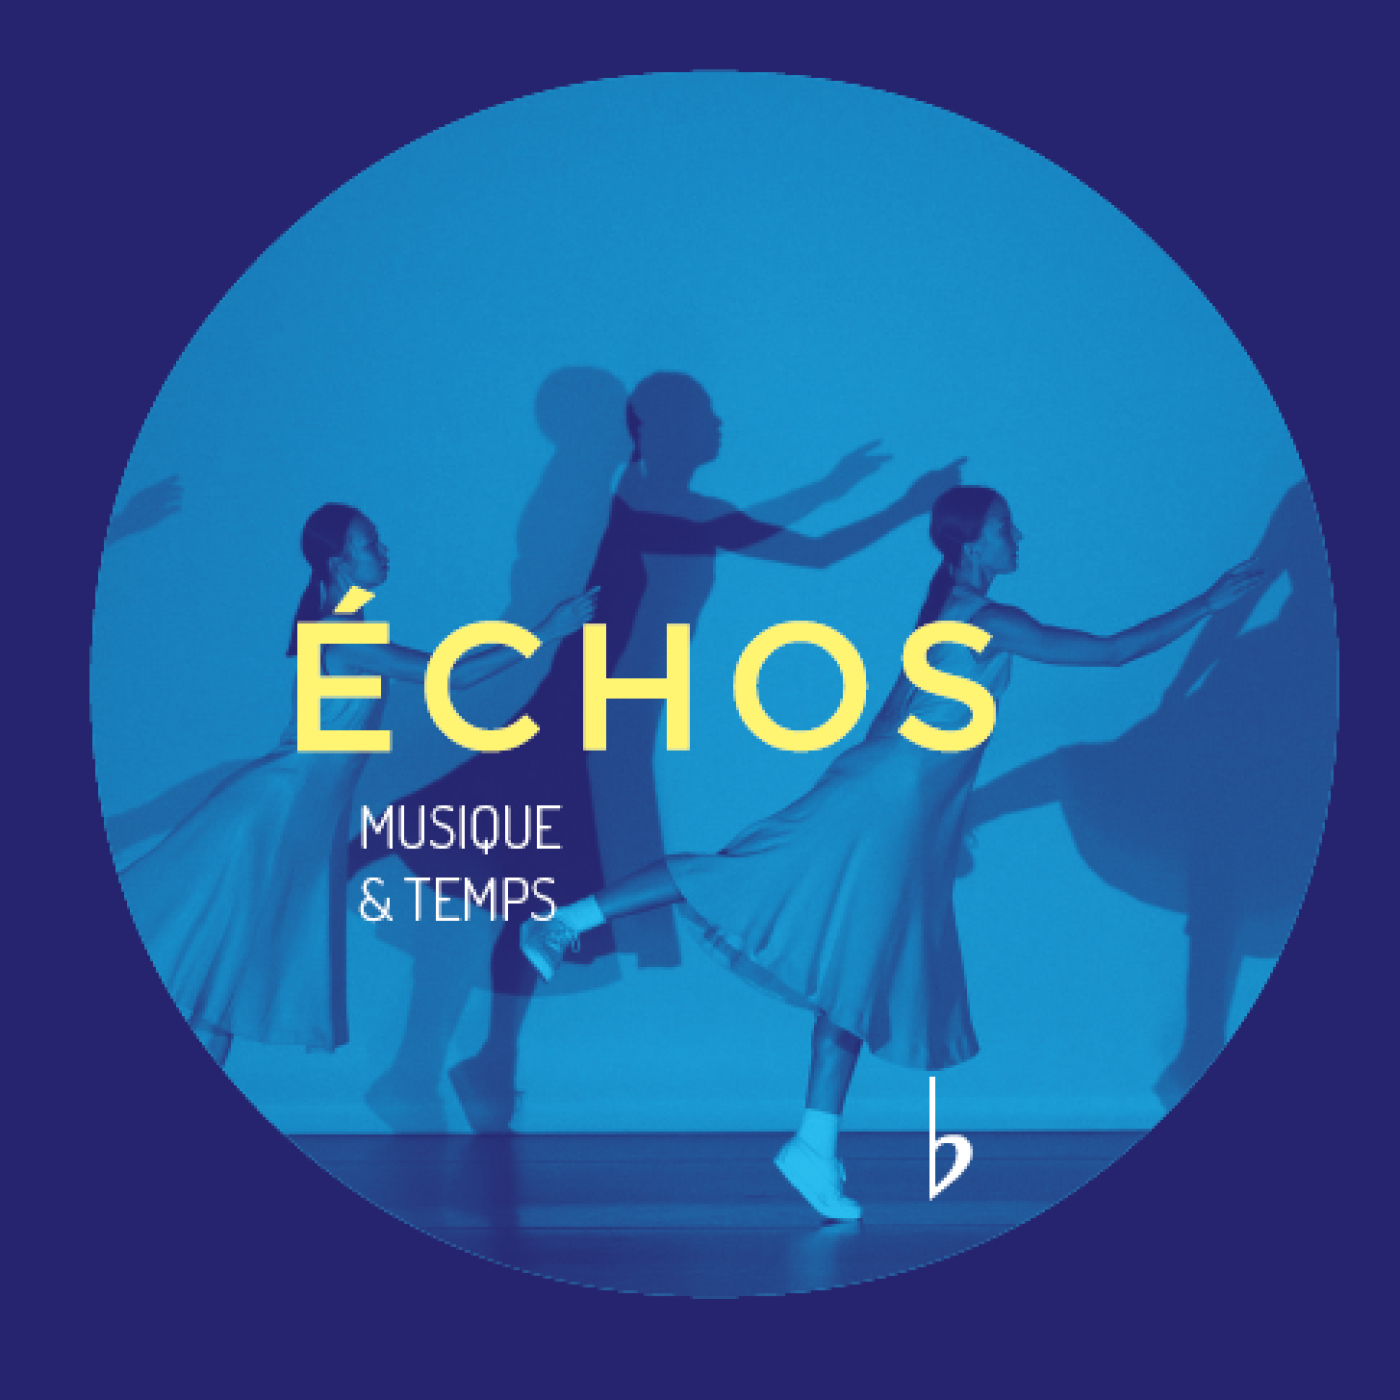 Echos : Musique & Temps - "Pas plus vite que la musique"